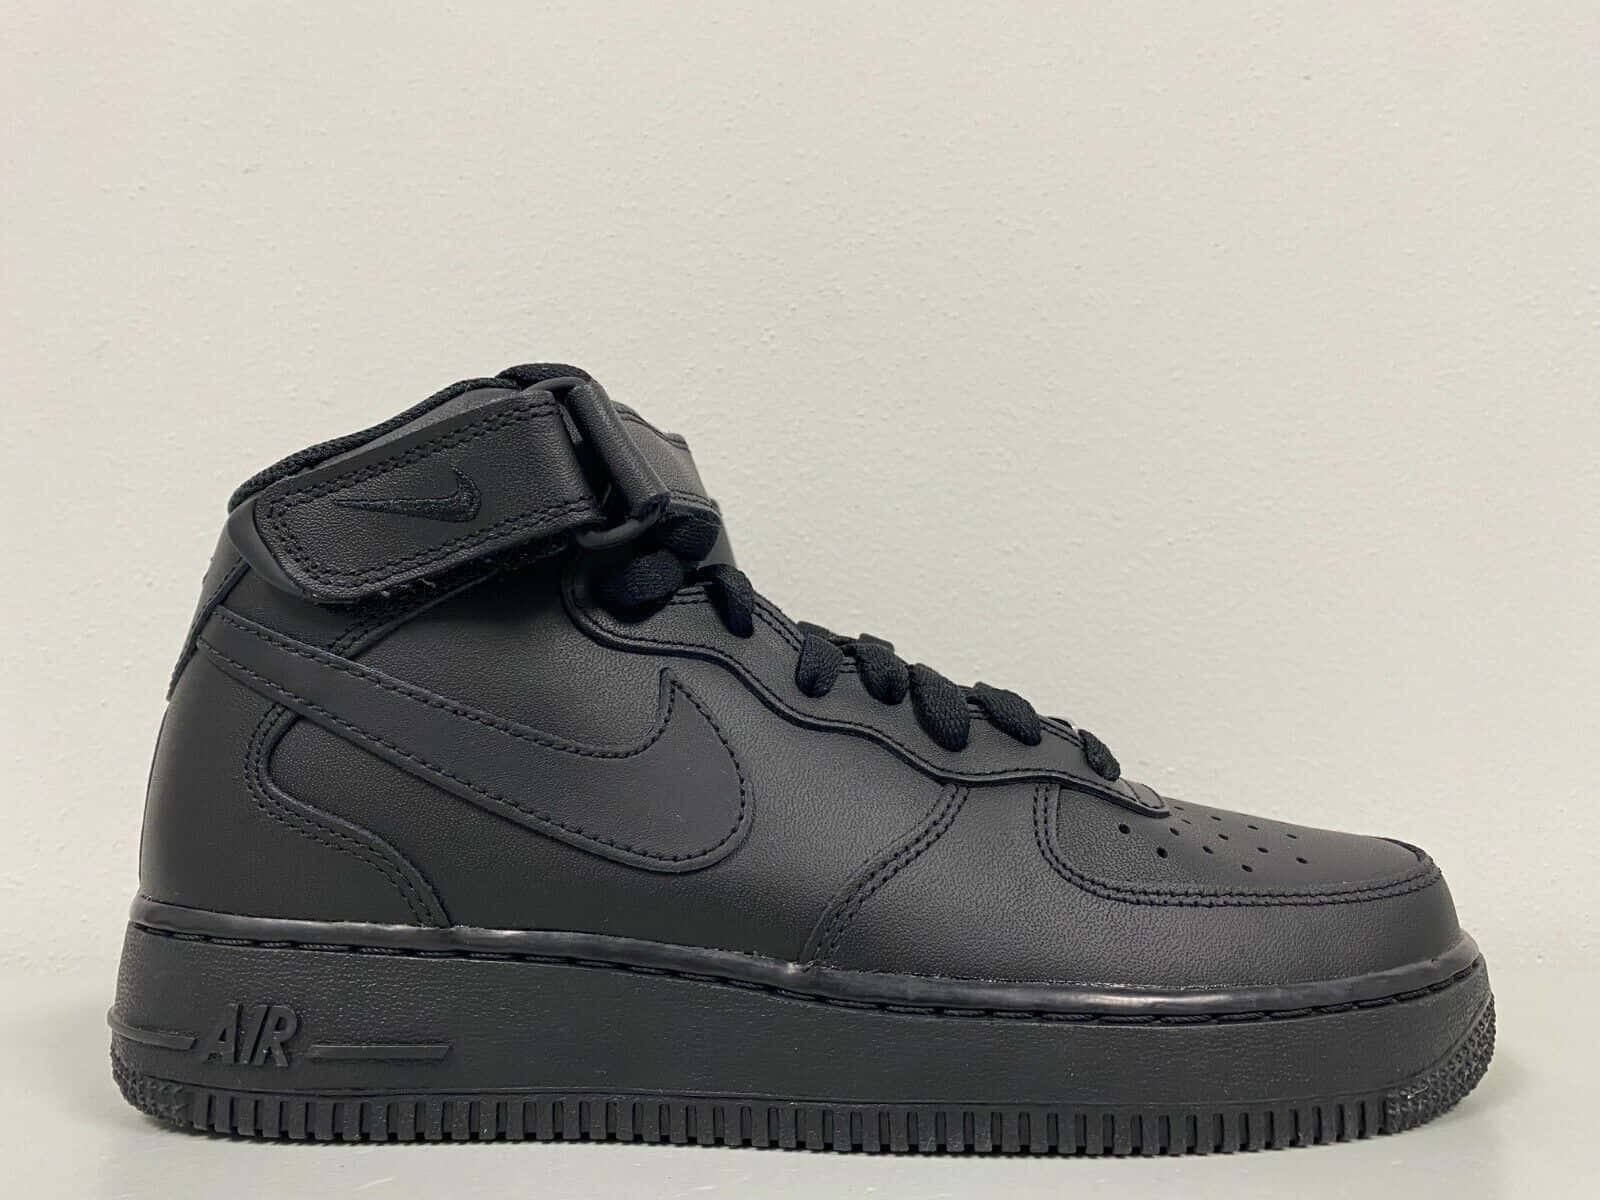 Imagende Nike Air Force 1 En Color Negro Completo